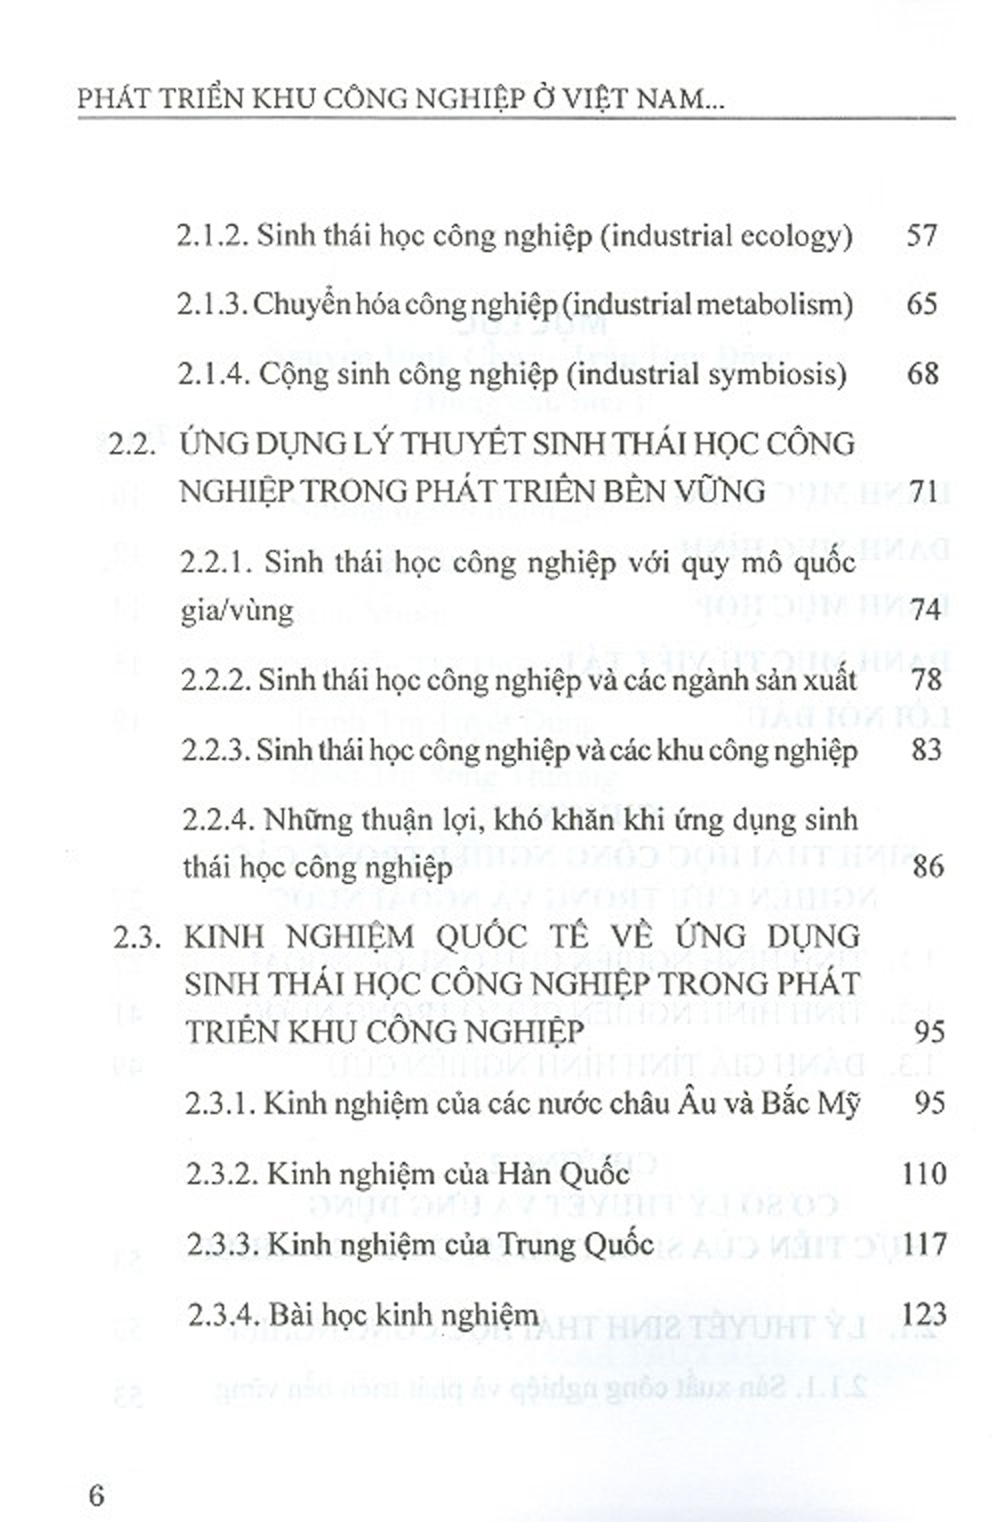 Phát Triển Khu Công Nghiệp Ở Việt Nam Theo Lý Thuyết Sinh Thái Học Công Nghiệp (Sách Chuyên Khảo)